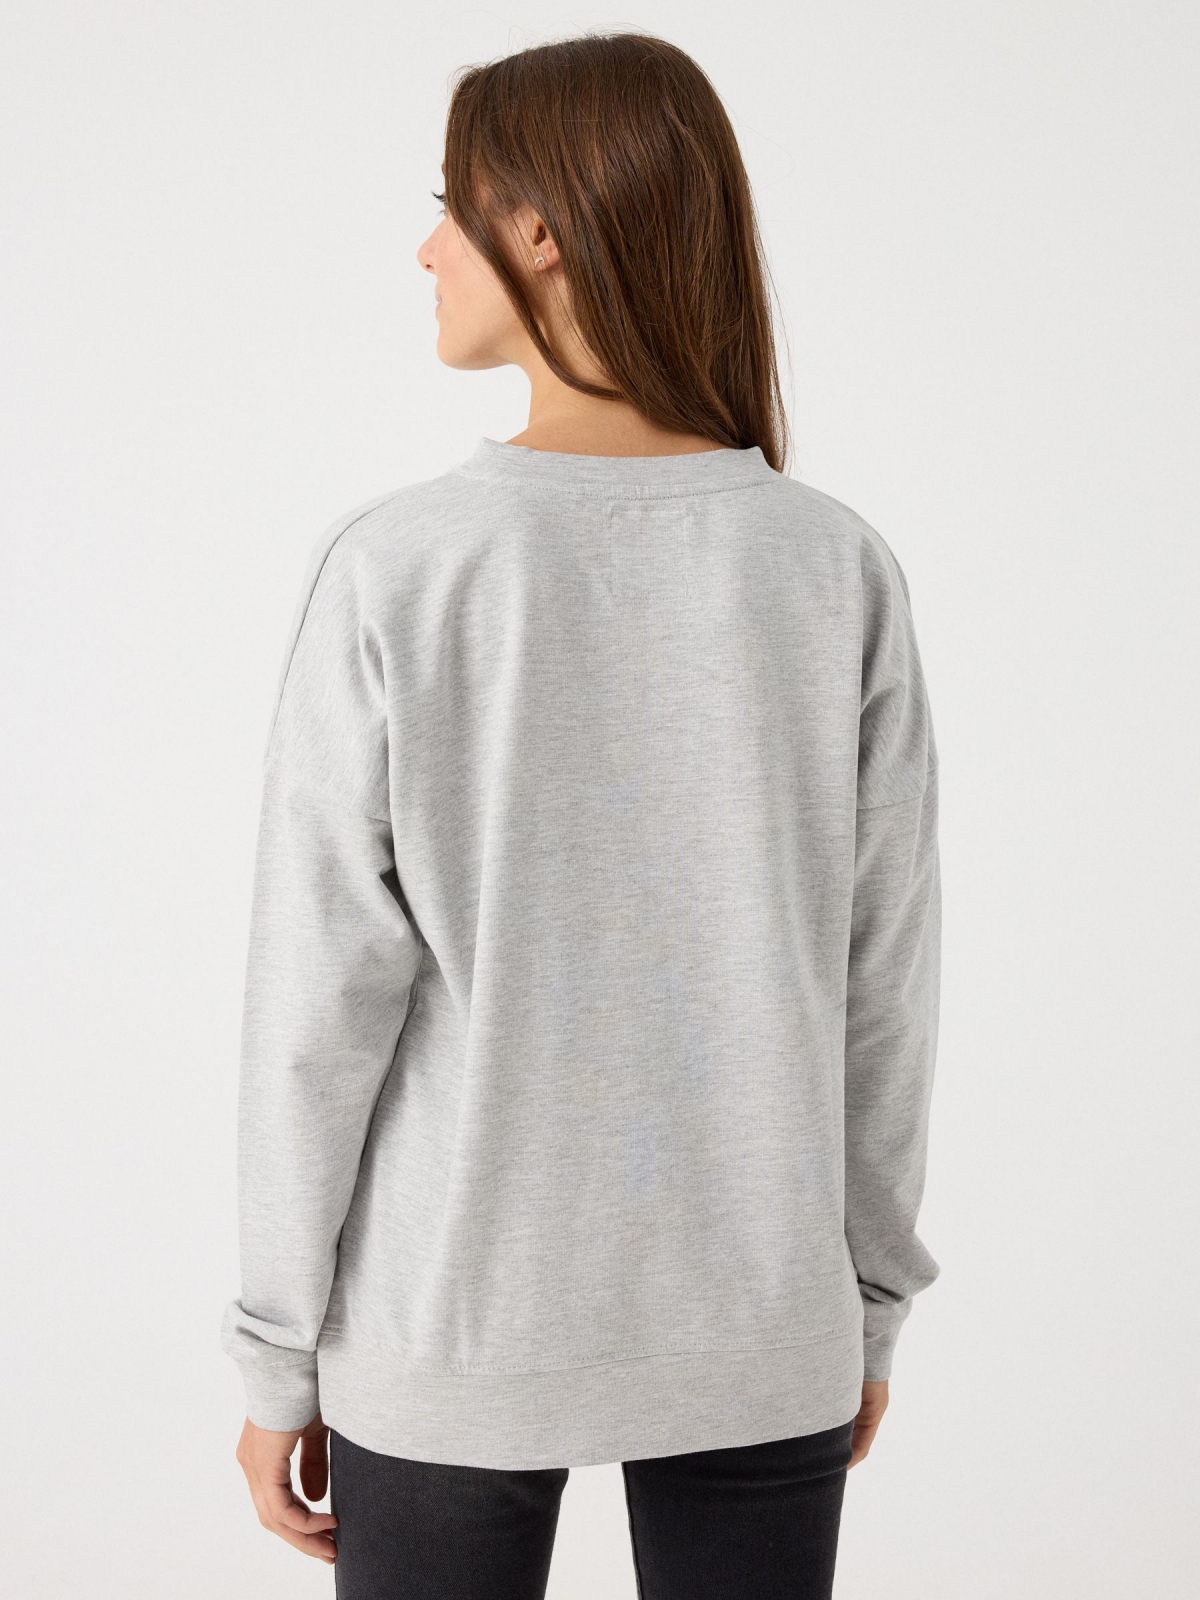 Basic round neck sweatshirt grey middle back view